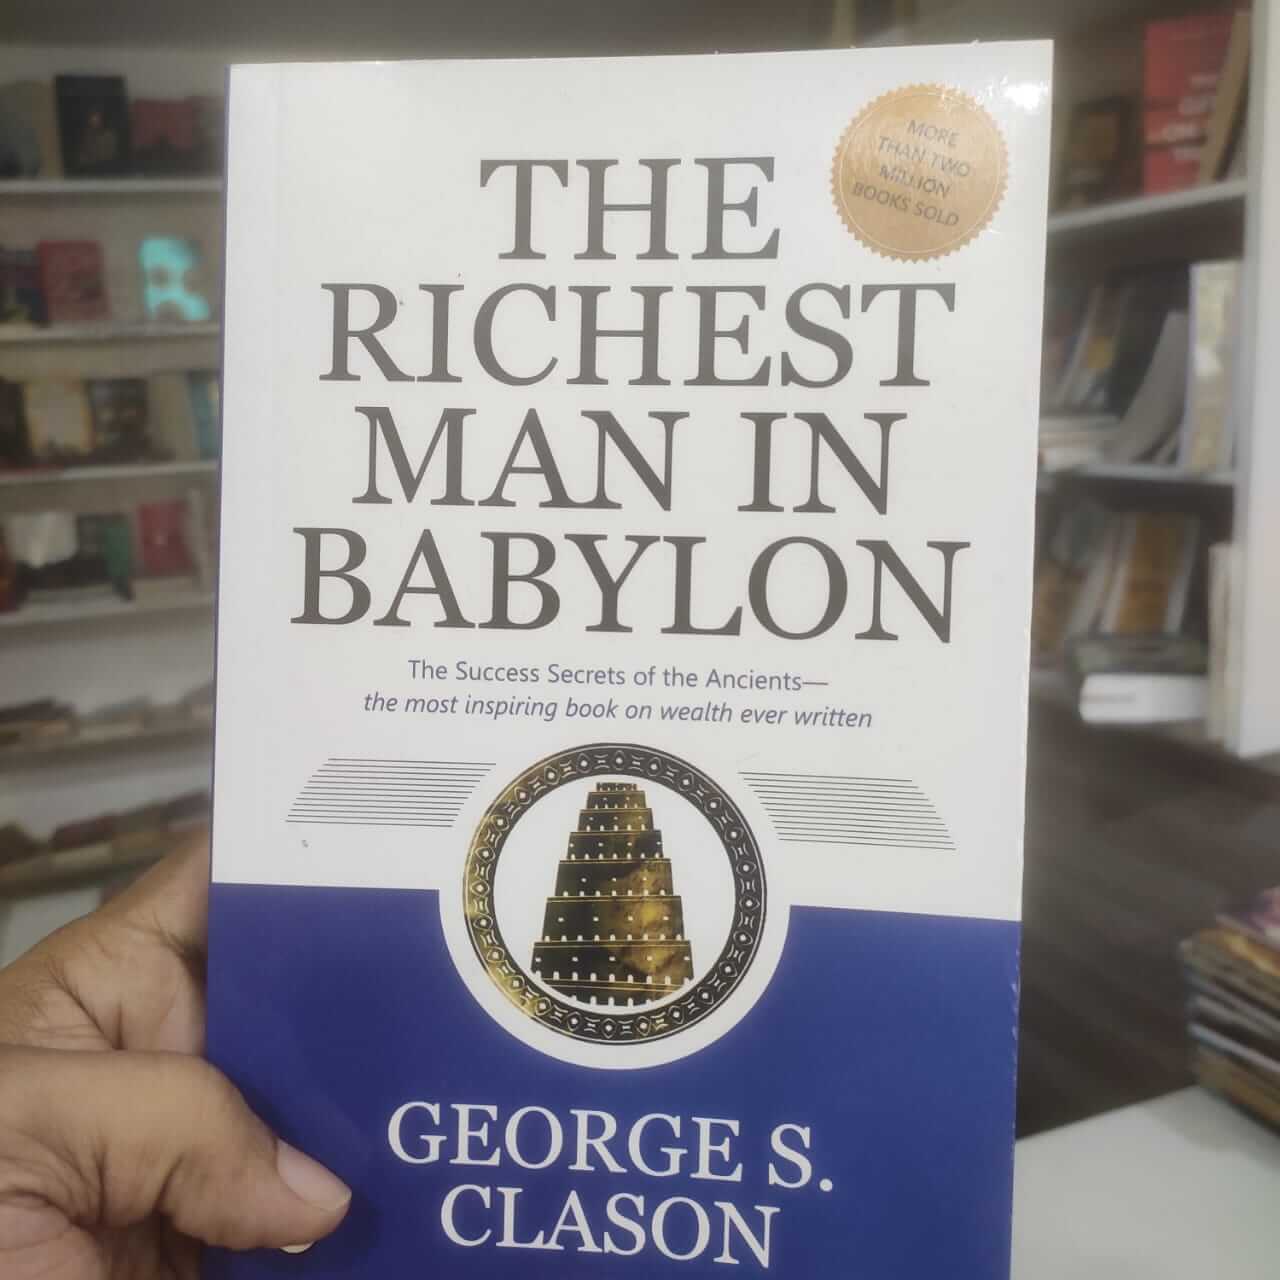 Meet the Richest Man of Babylon